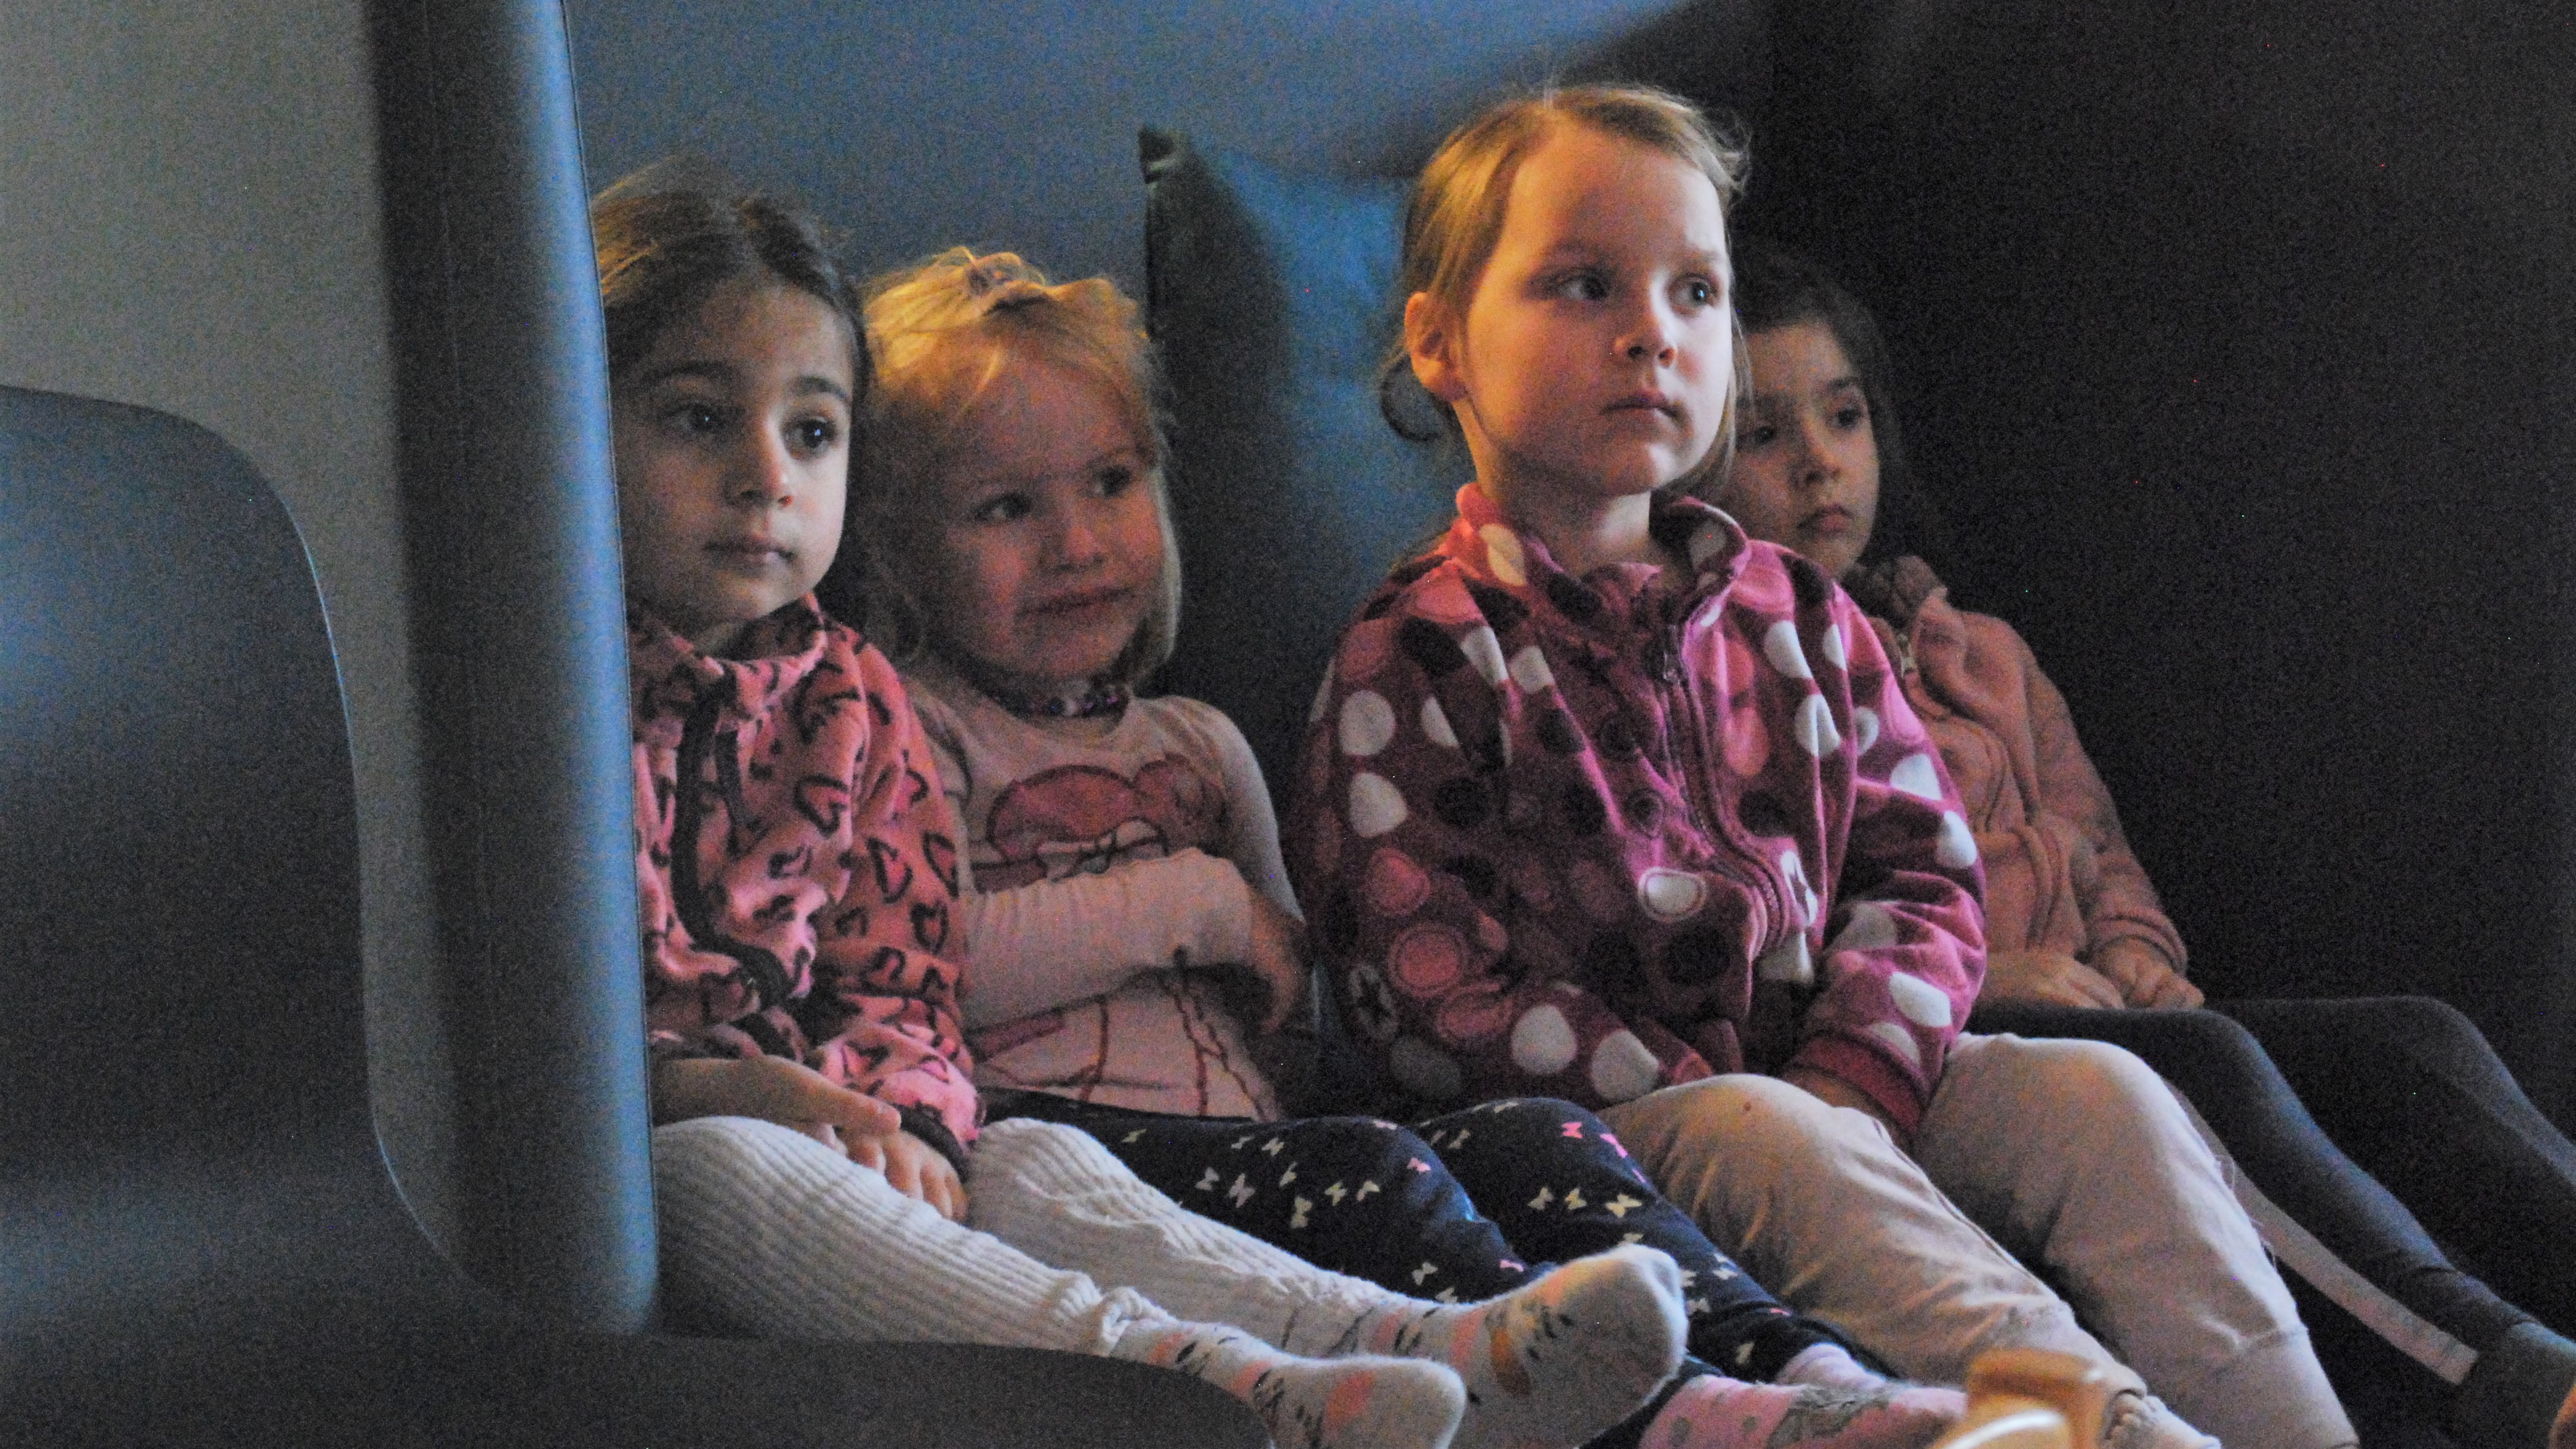 Barna fra Bamseby barnehage fulgte spent med på Storms forestilling og høytlesning.